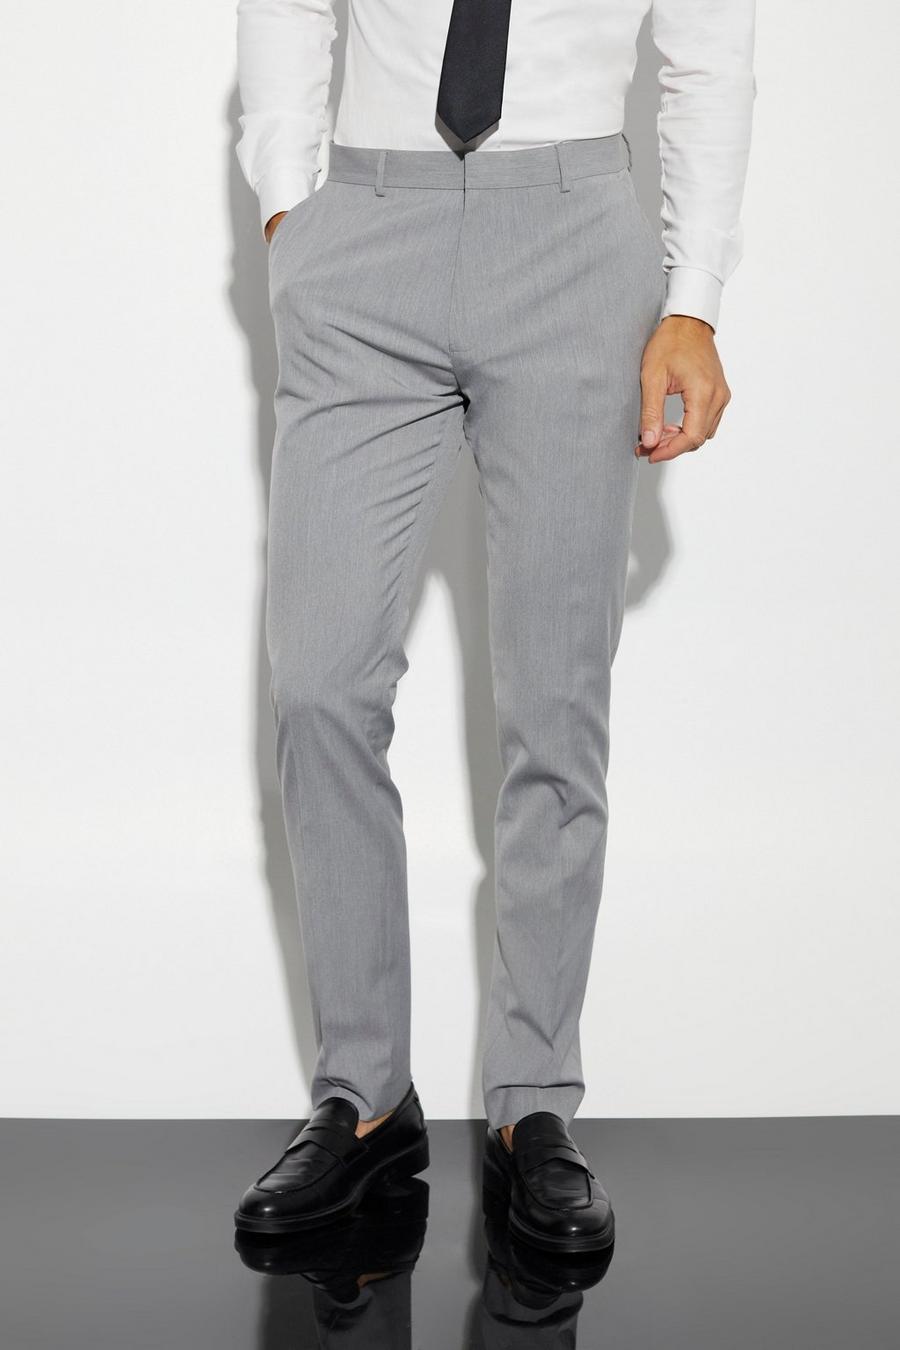 אפור gris מכנסי חליפה בגזרה צרה לגברים גבוהים